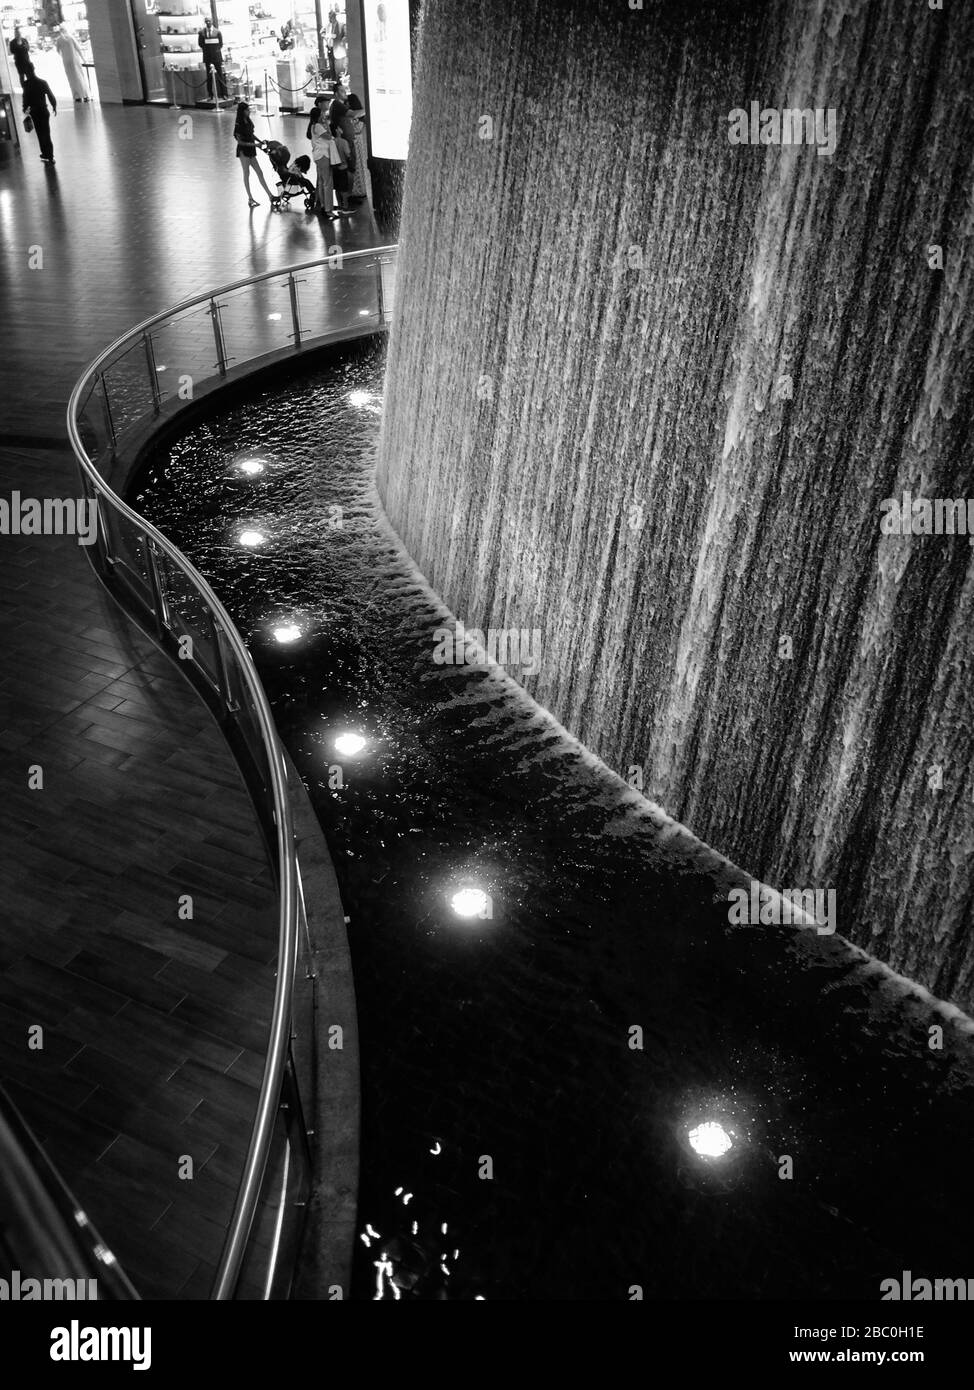 Der Wasserfall Pearl Divers in der gigantischen Dubai Mall im Stadtzentrum von Dubai, Vereinigte Arabische Emirate. Stockfoto